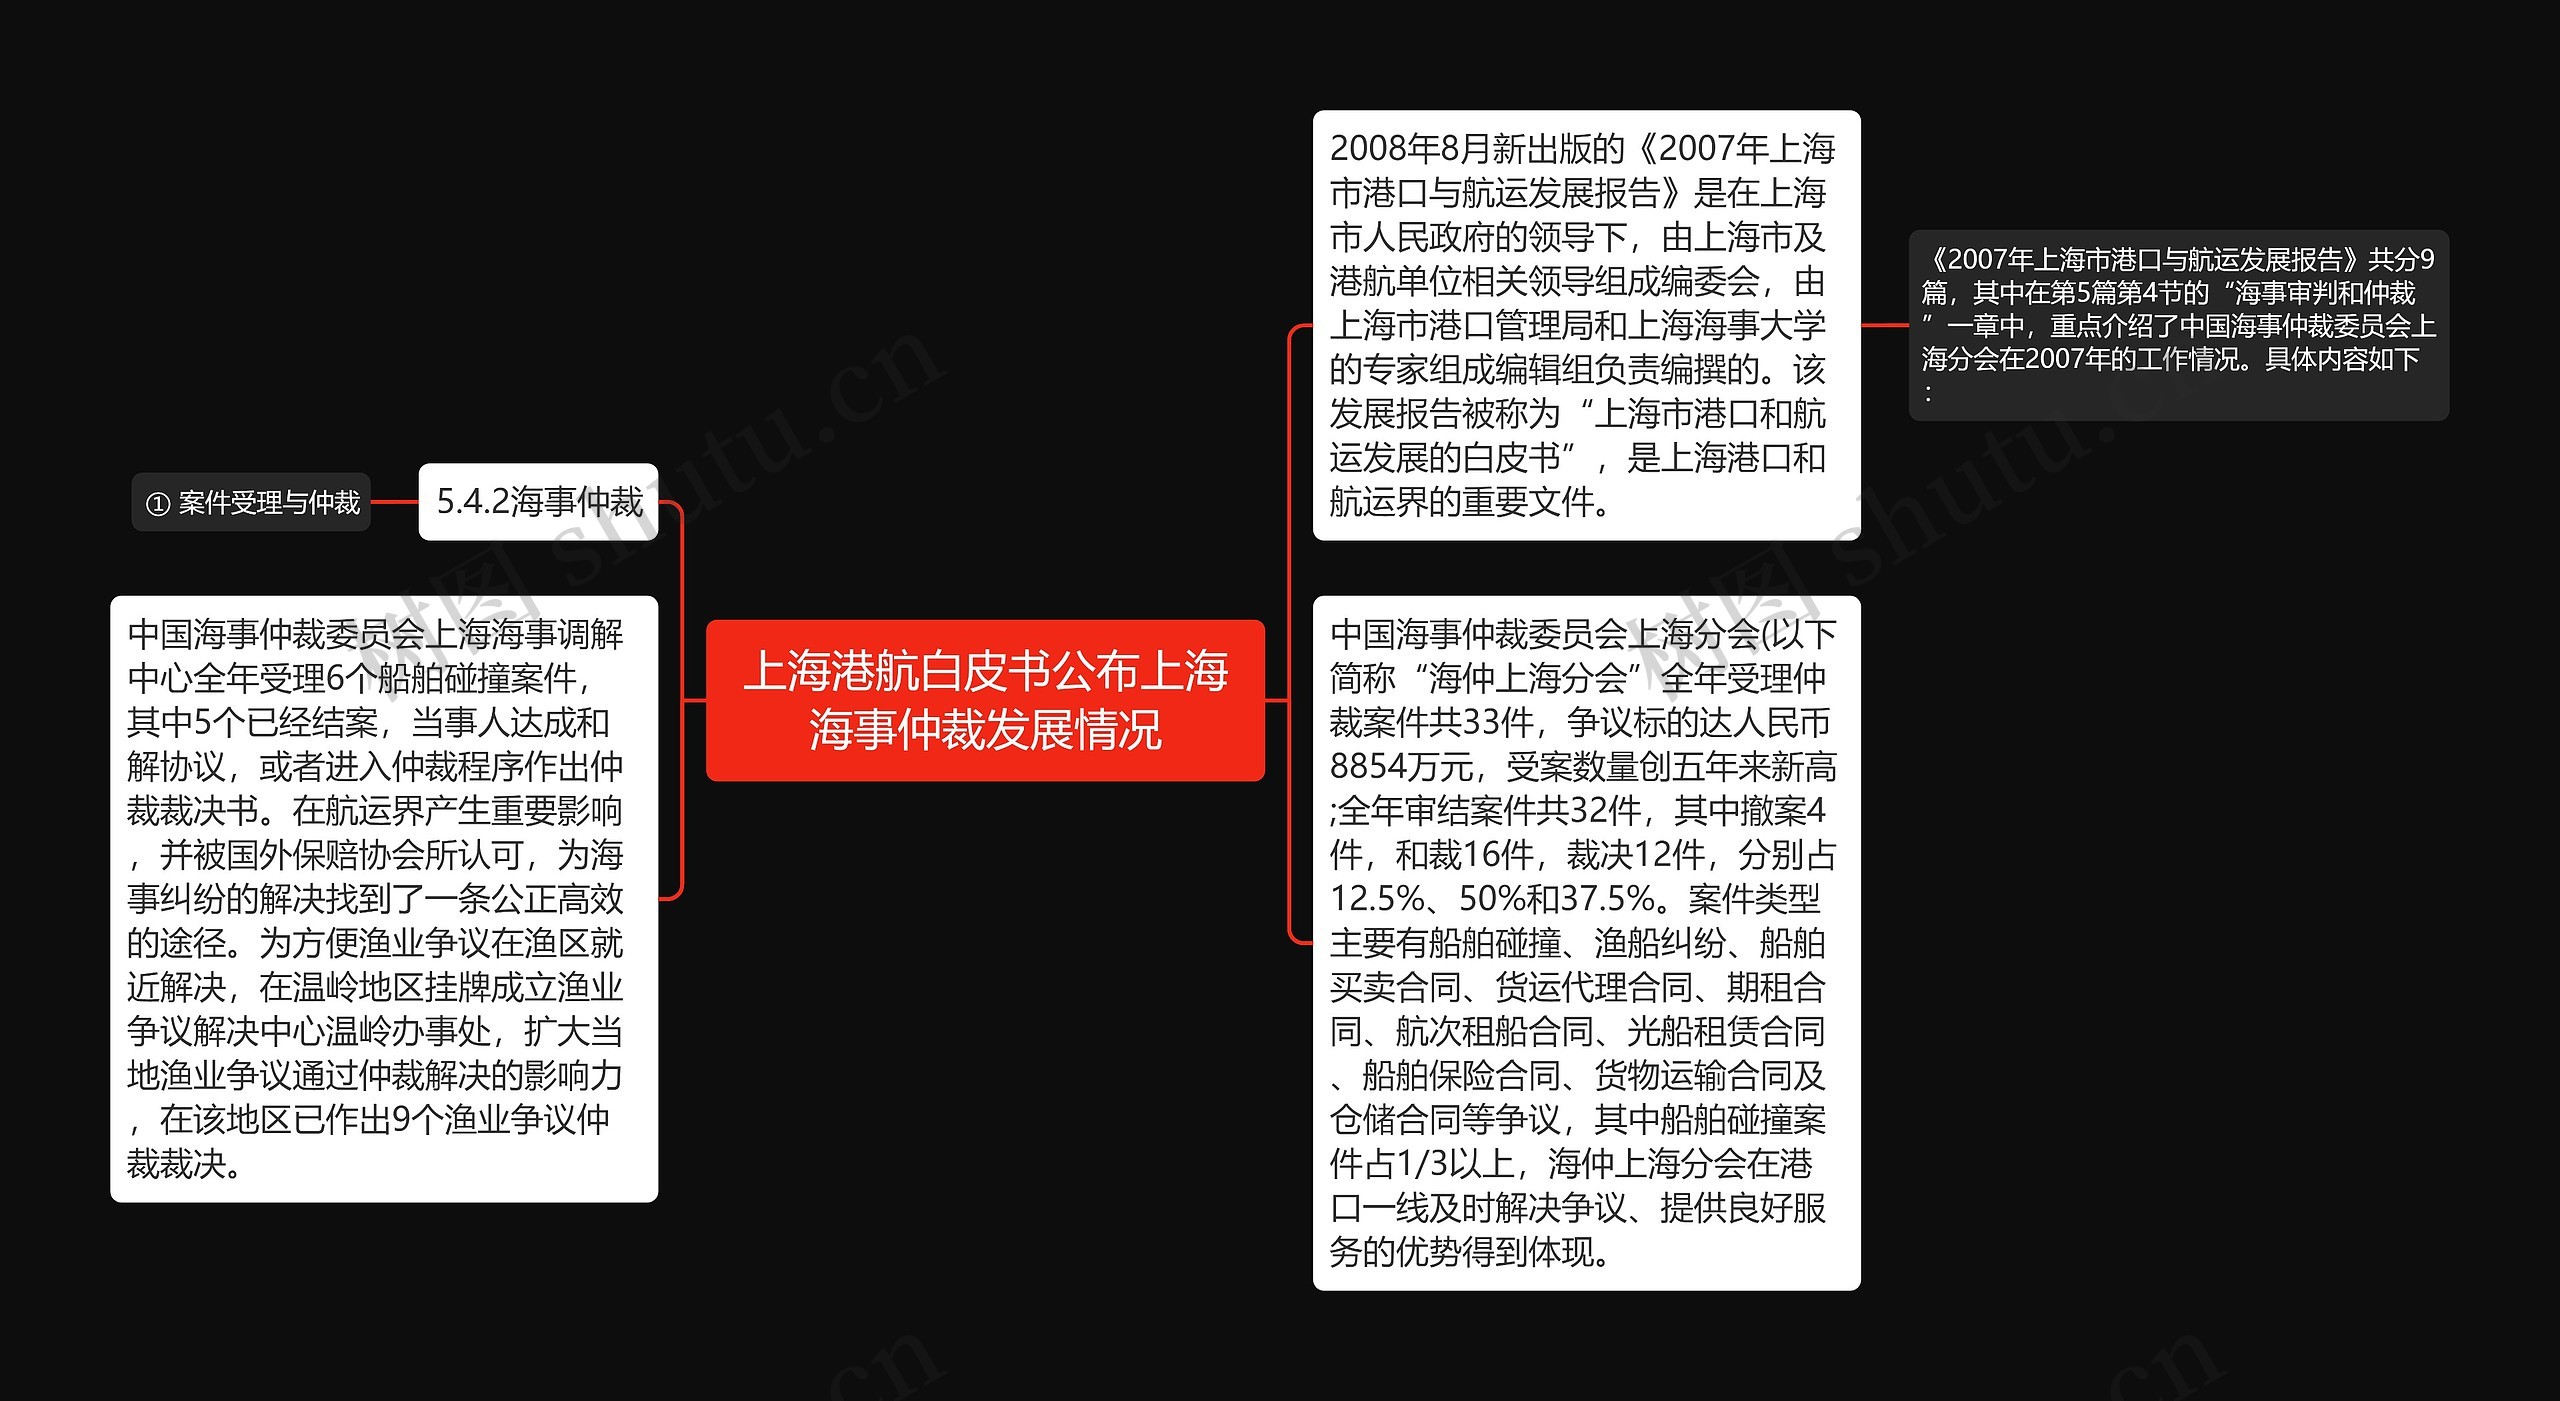 上海港航白皮书公布上海海事仲裁发展情况